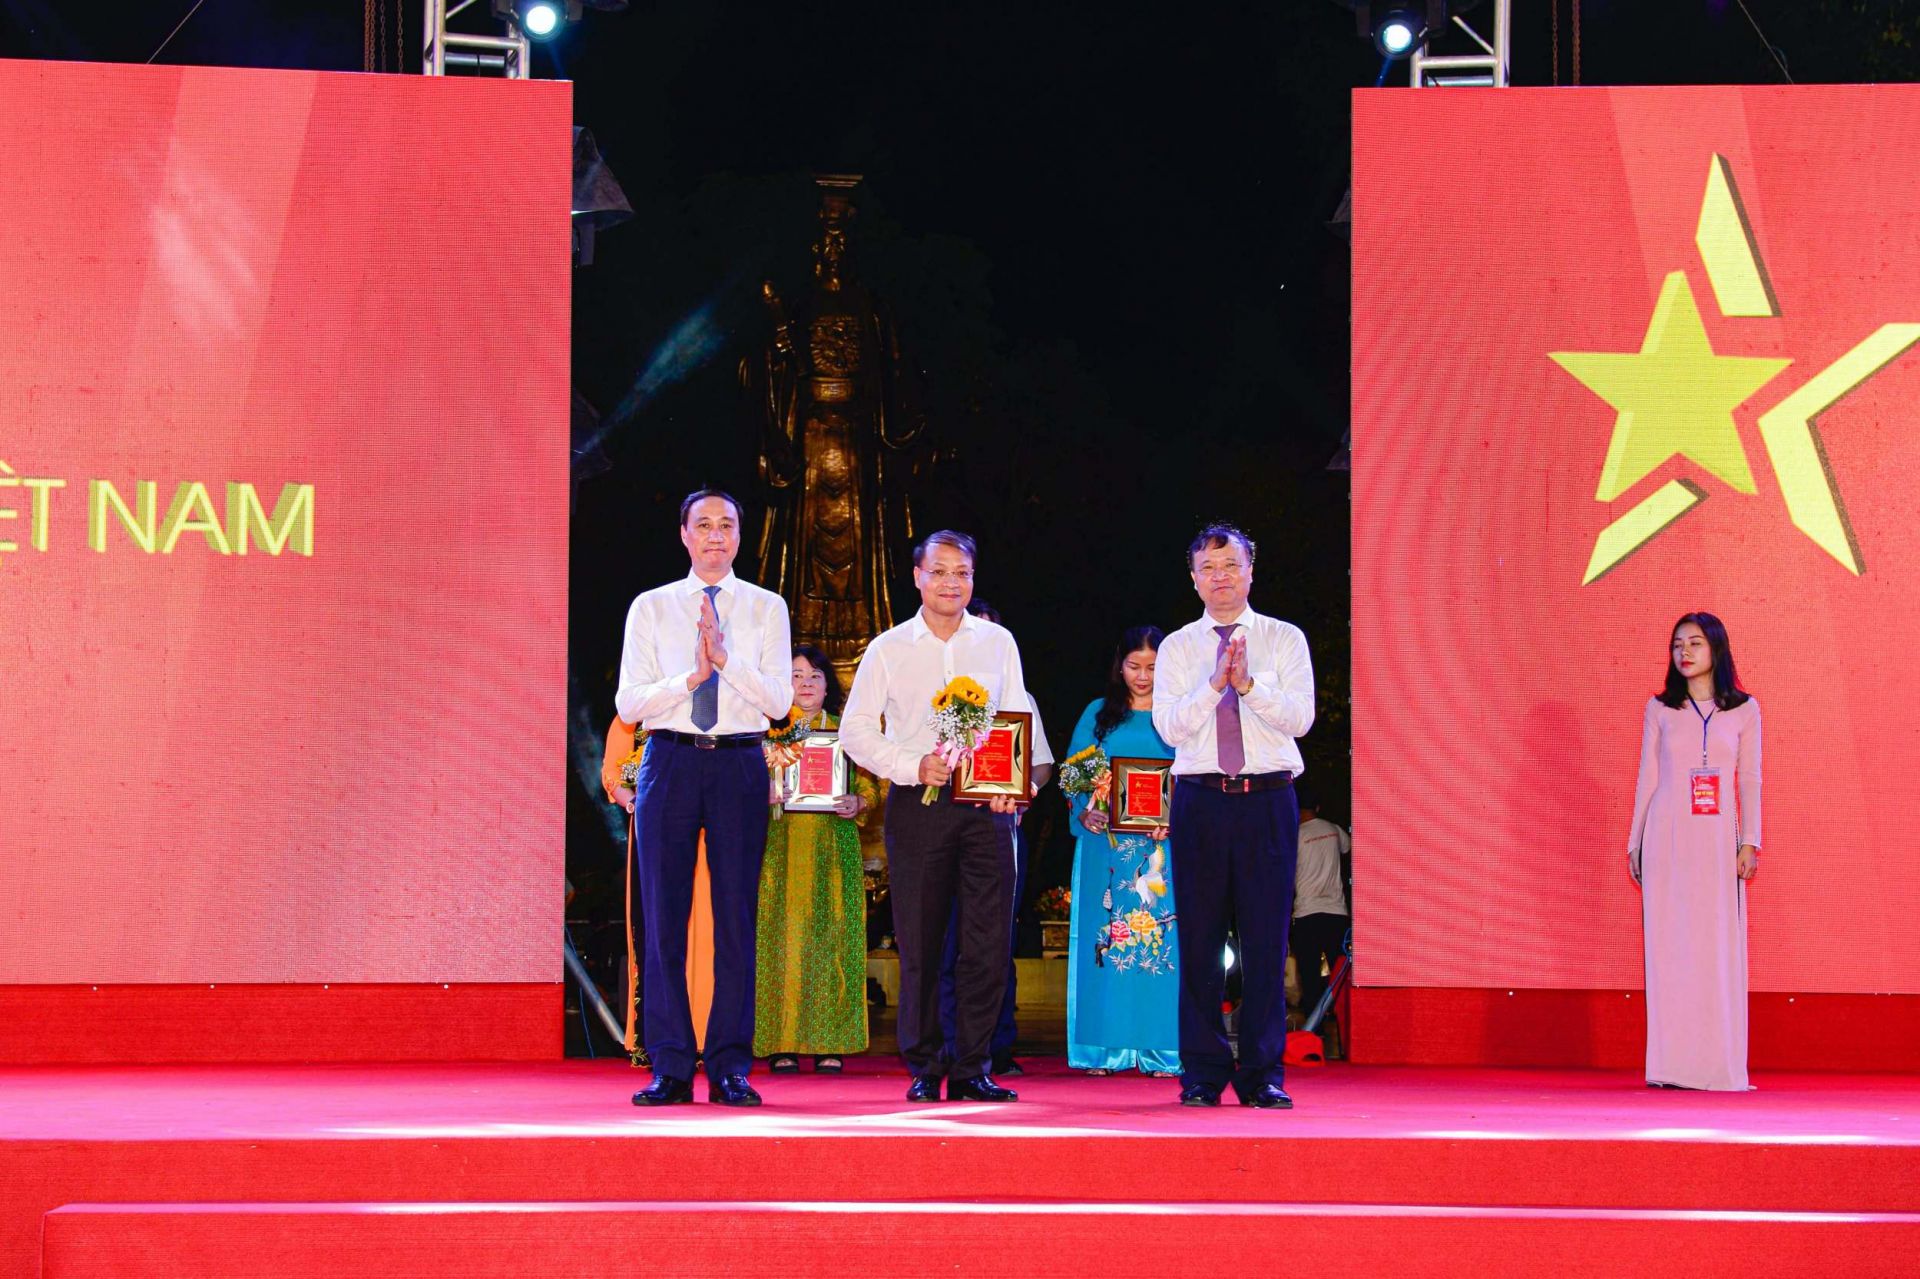 Phó Chủ tịch Ủy ban Trung ương Mặt trận Tổ quốc Việt Nam Phùng Khánh Tài (trái) và Thứ trưởng Bộ Công Thương Đỗ Thắng Hải (phải) trao kỷ niệm chương cho đại diện Sở Công Thương Hải Phòng